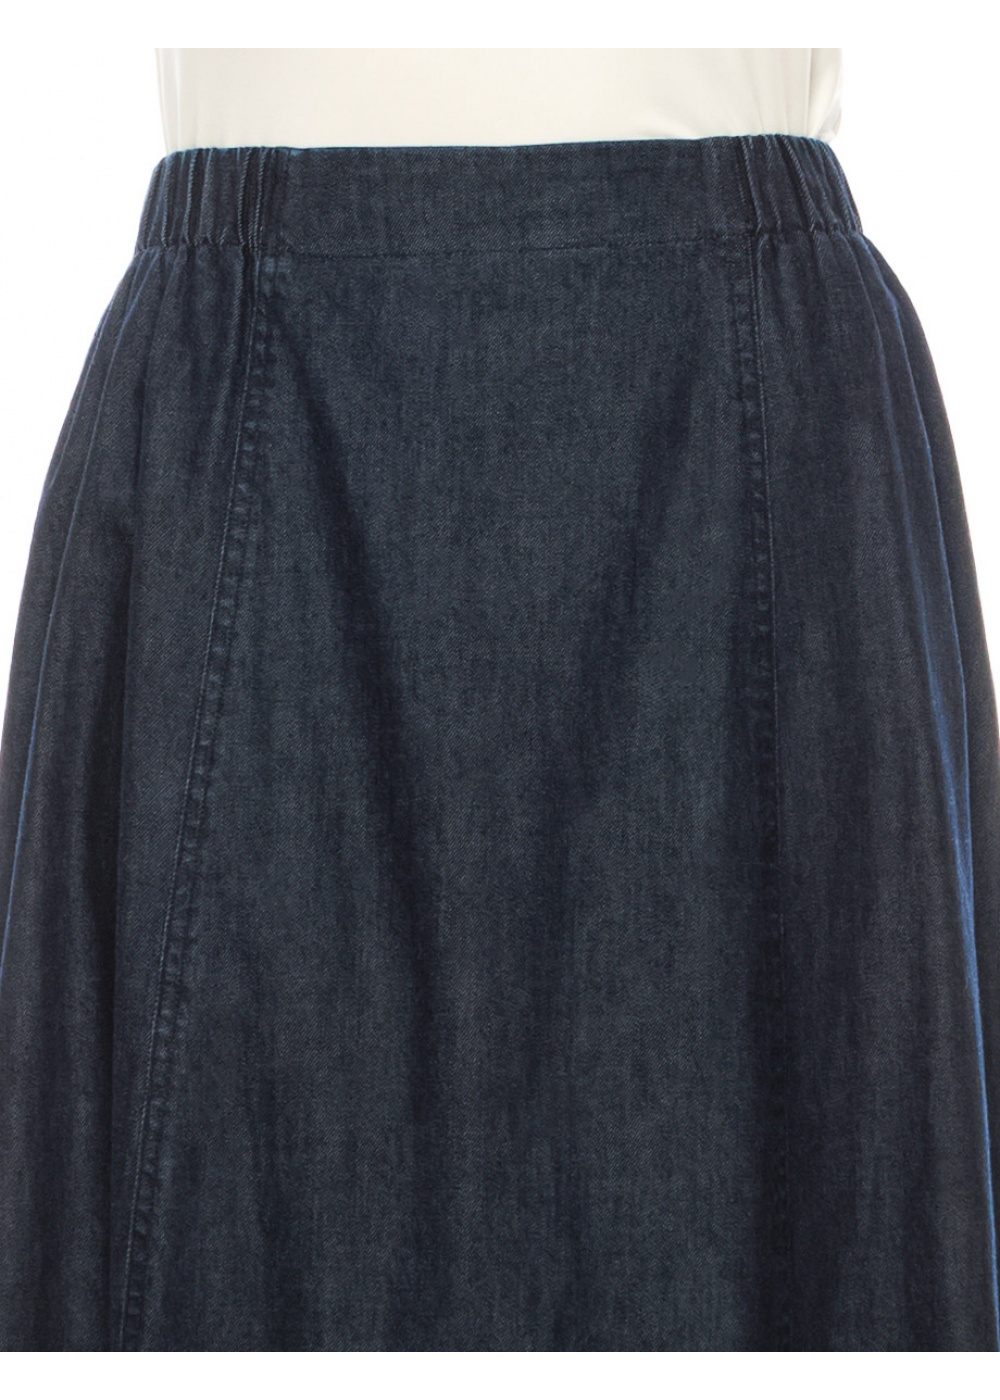 Denim Elegance Maxi Skirt In Navy Blue